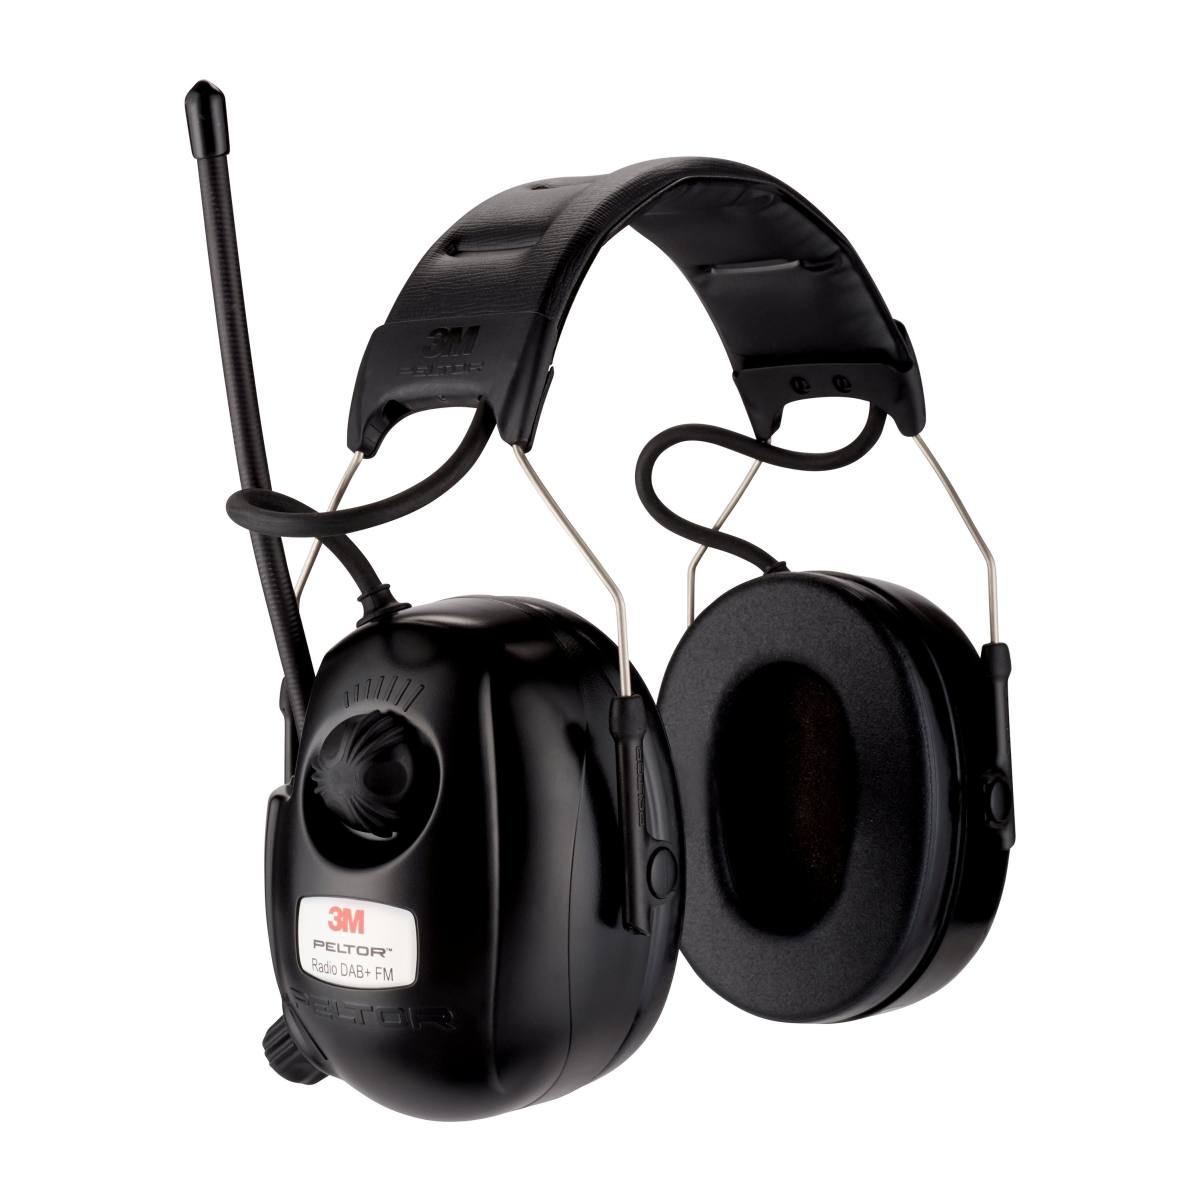 3M Peltor Radio DAB FM, black, headband, SNR = 31 dB